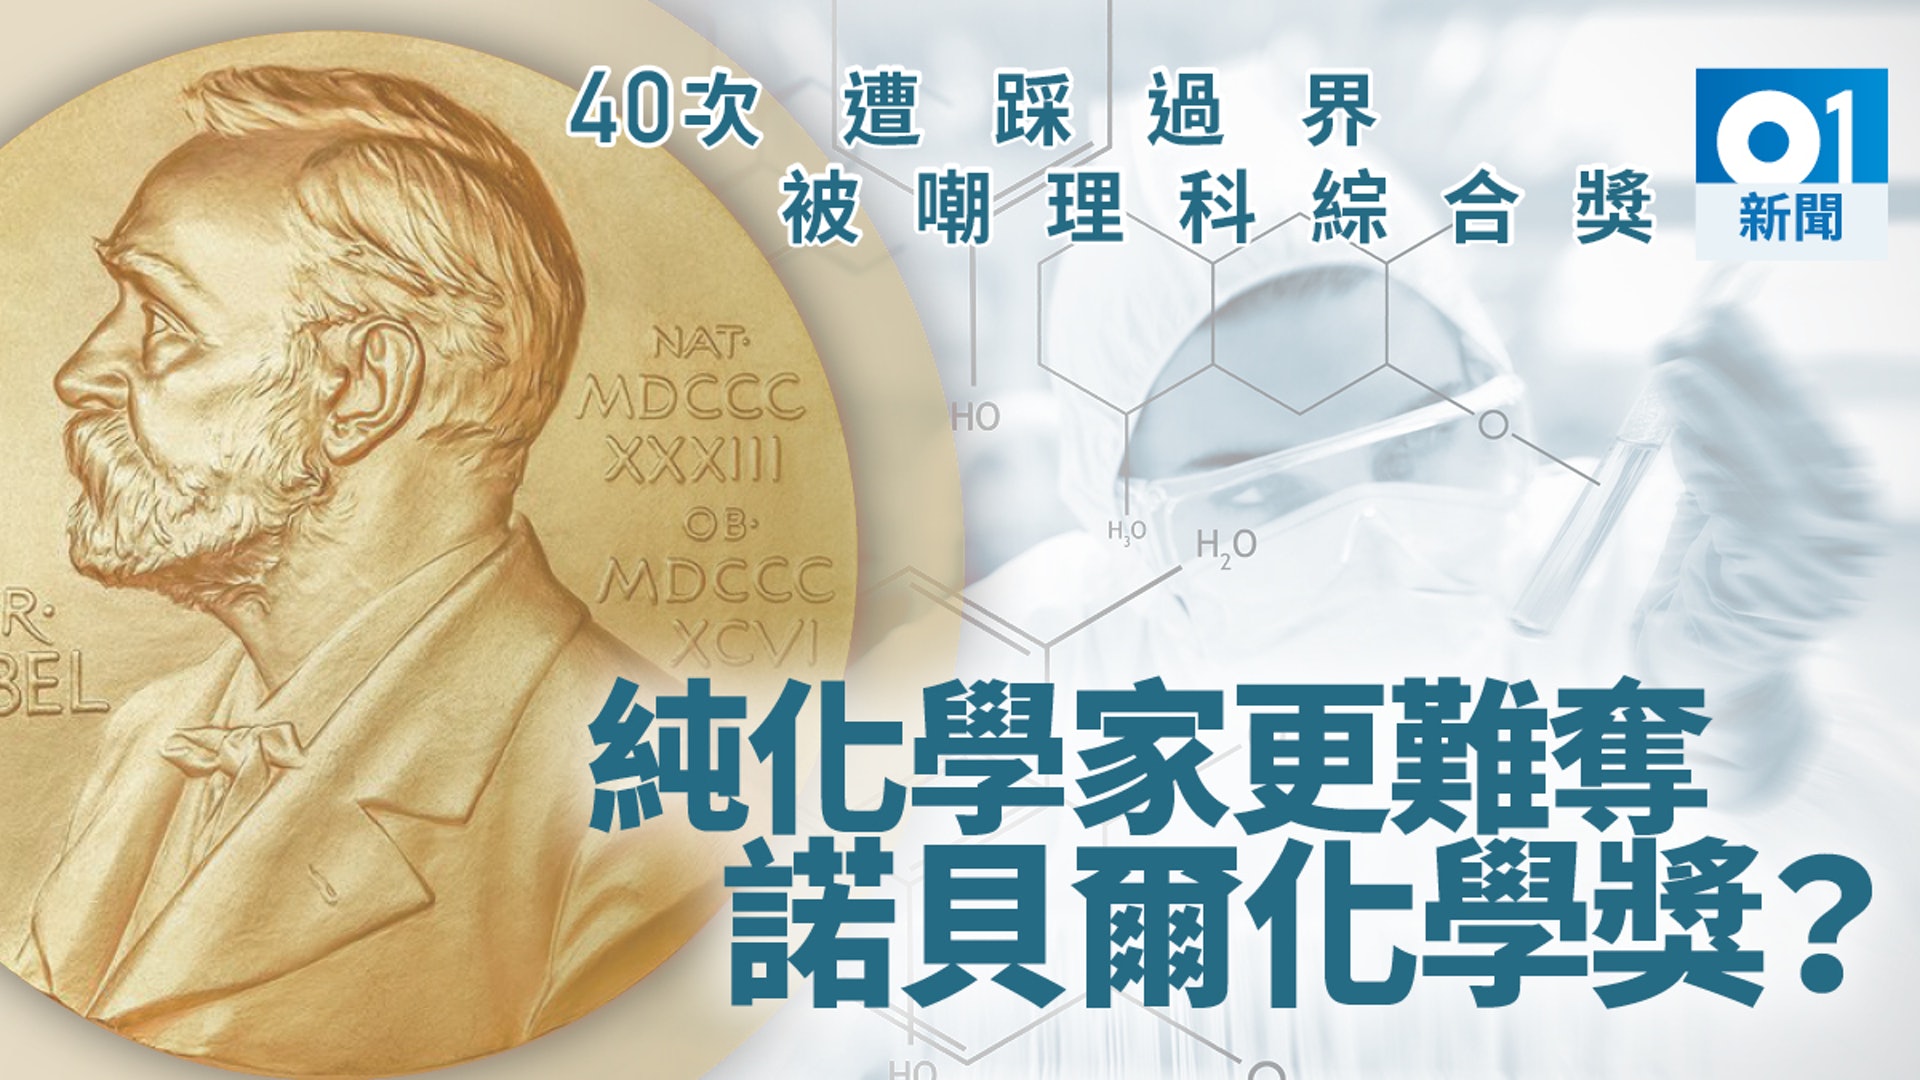 諾貝爾化學獎屢次踩過界撈埋物理生物對純化學家 不友善 香港01 世界專題